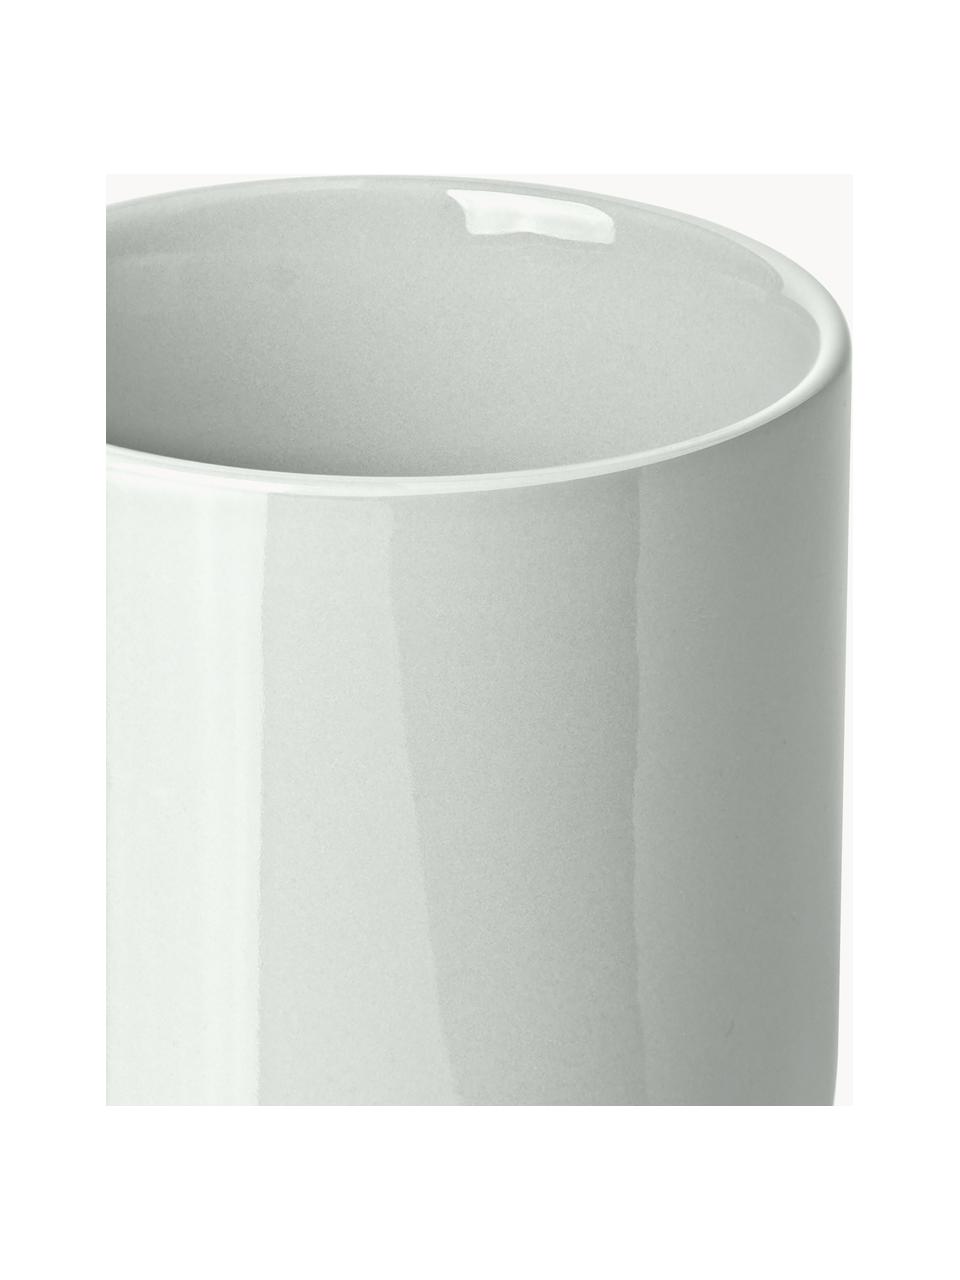 Porseleinen koffiemokken Nessa, 4 stuks, Hoogwaardig hard porselein, geglazuurd, Lichtgrijs, glanzend, Ø 8 x H 10 cm, 200 ml